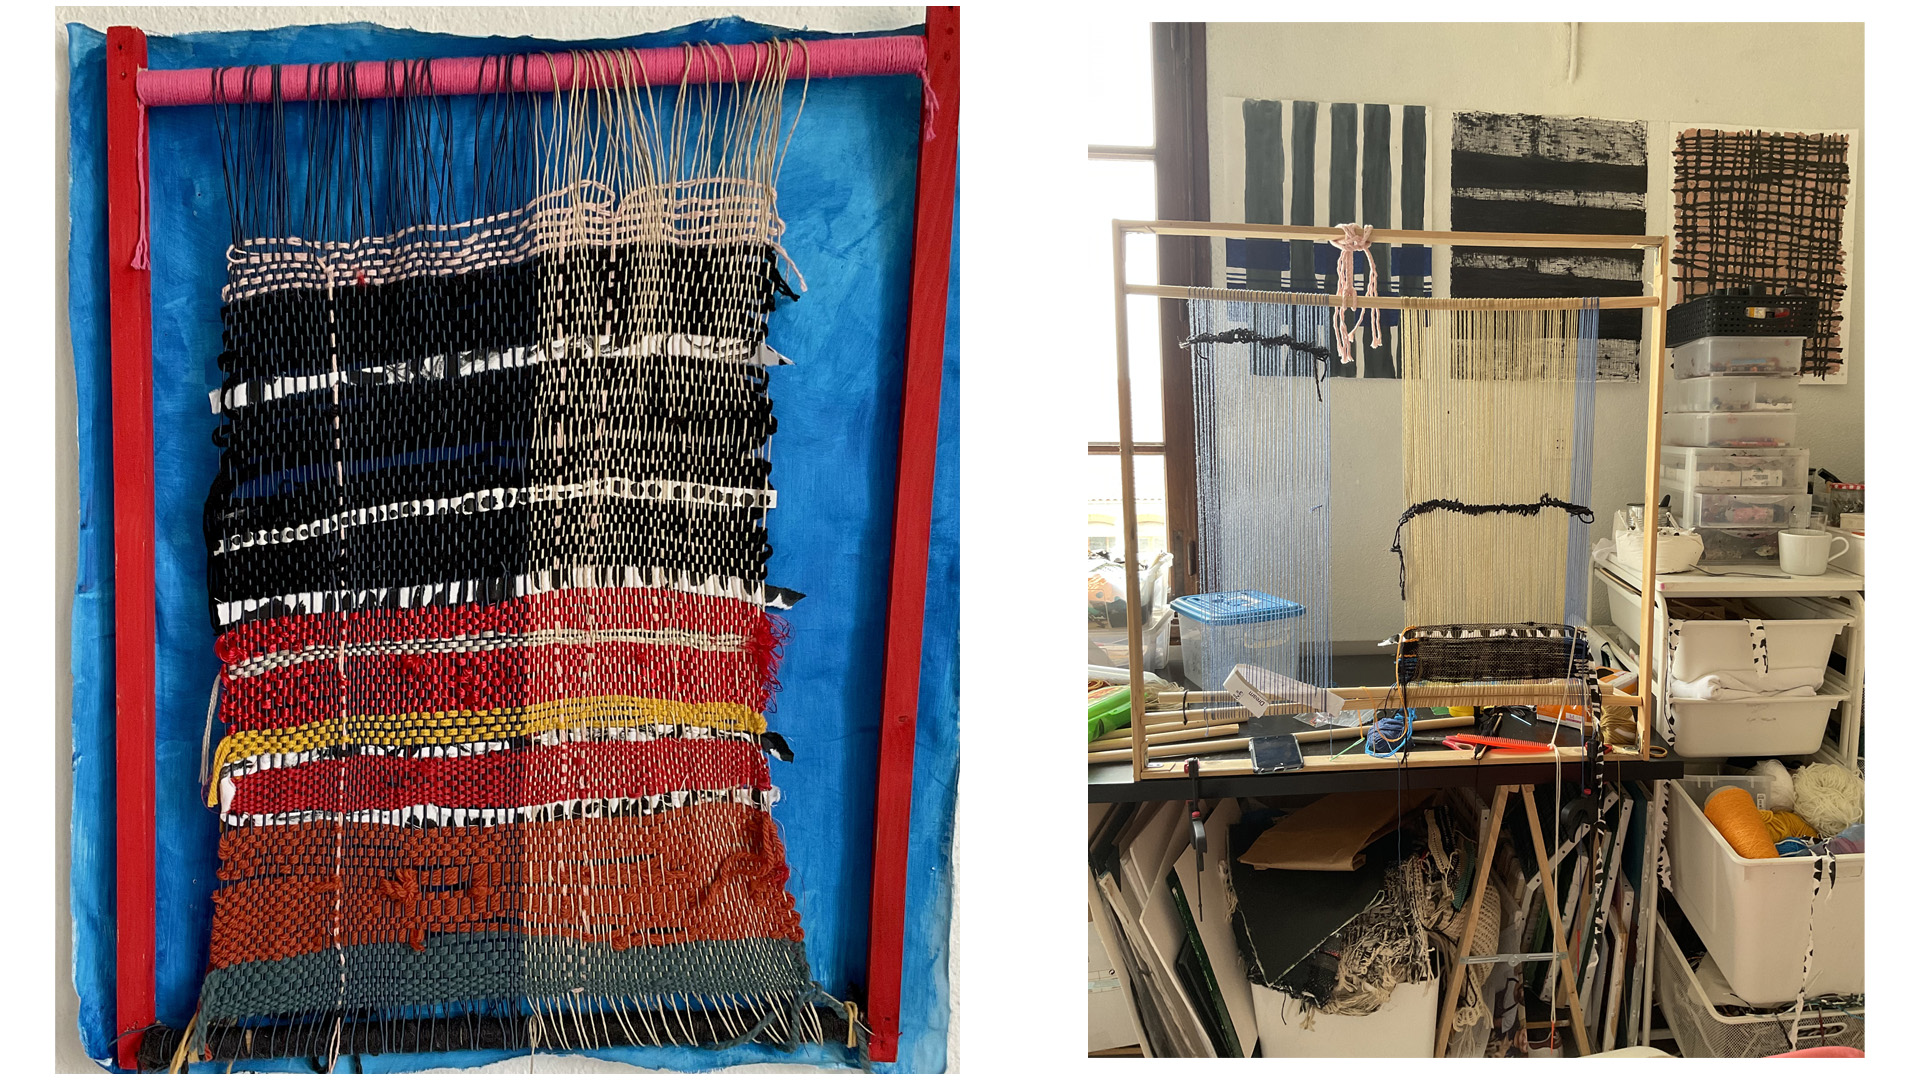 tissage et métier à tisser marocain, de sanaa mejjadi visuel artiste à montpellier france et casablanca maroc